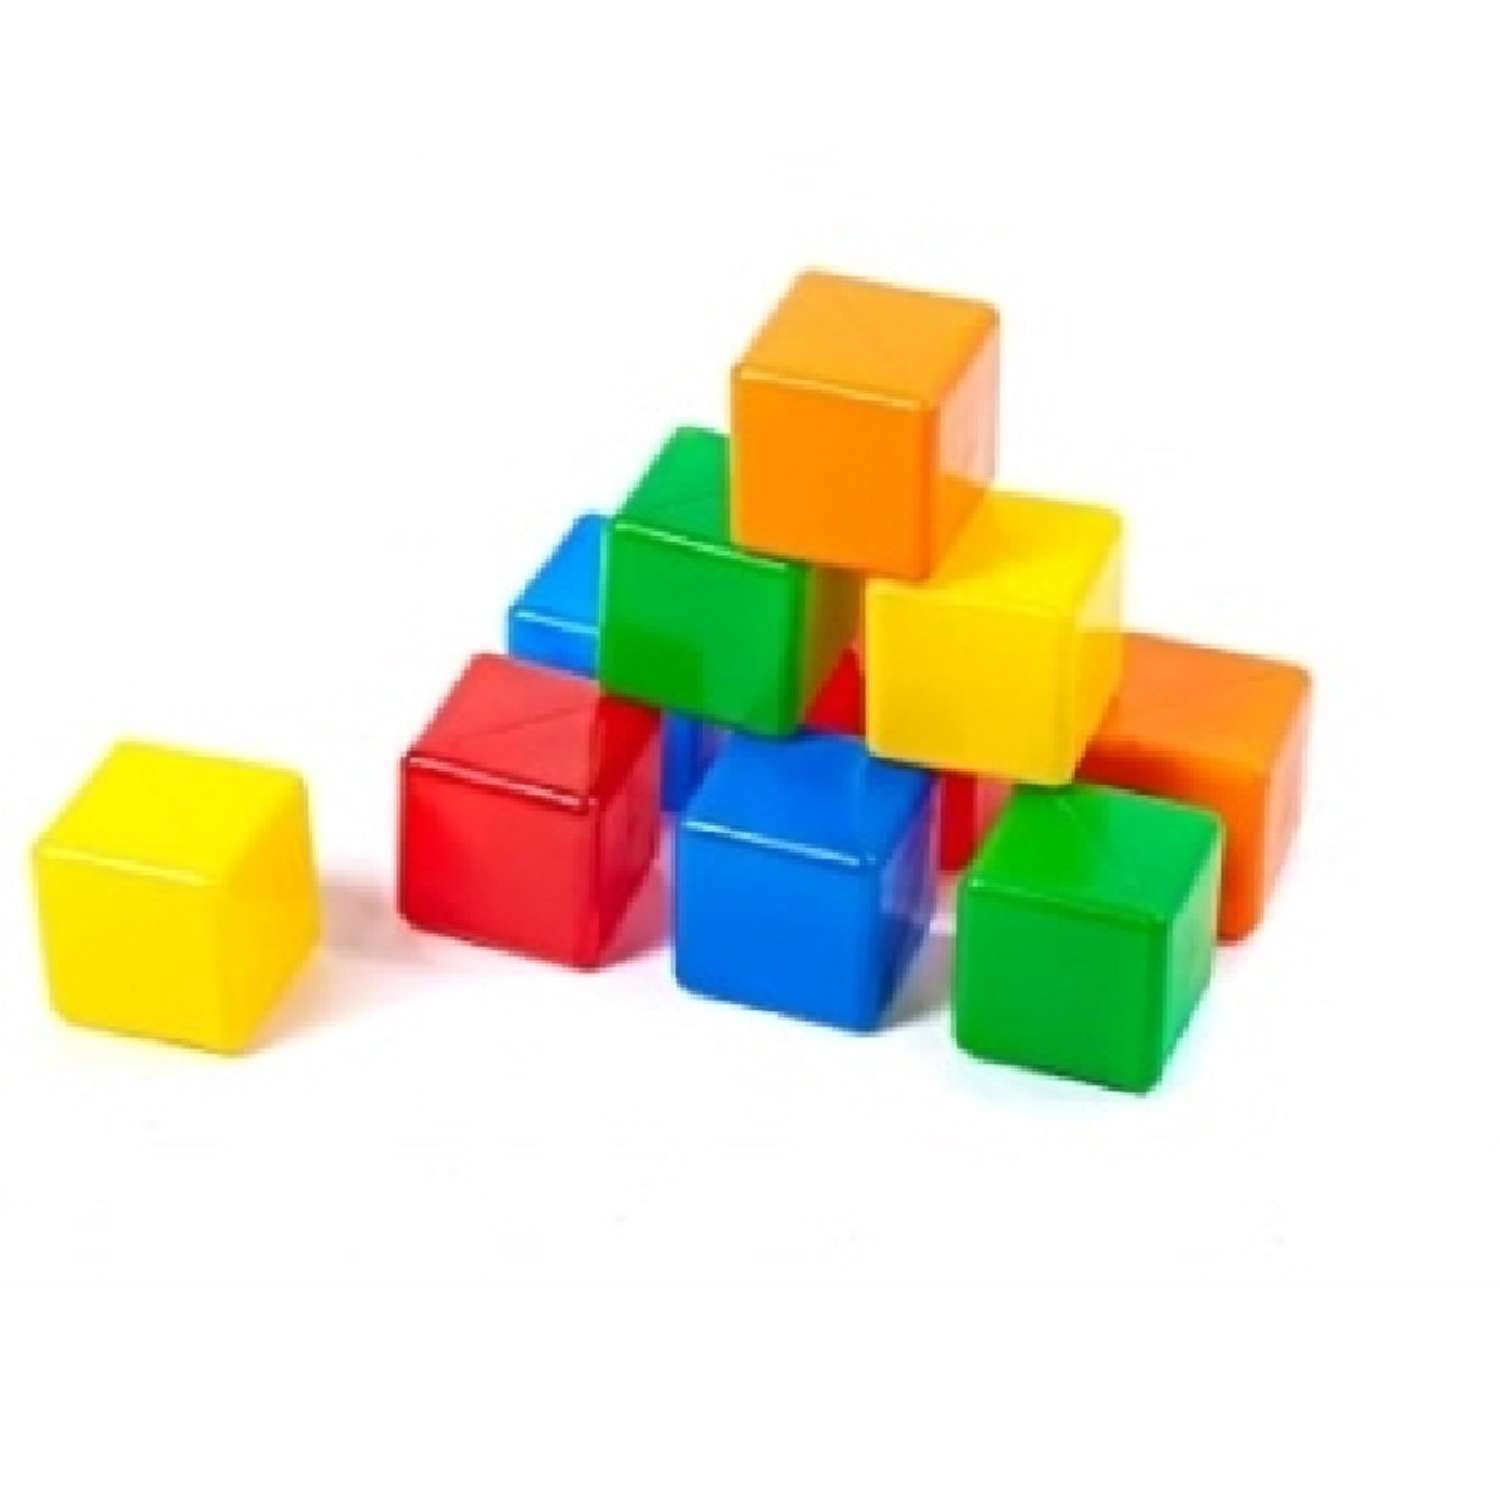 Строительный набор Строим вместе счастливое детст Кубиков 10 шт - фото 2